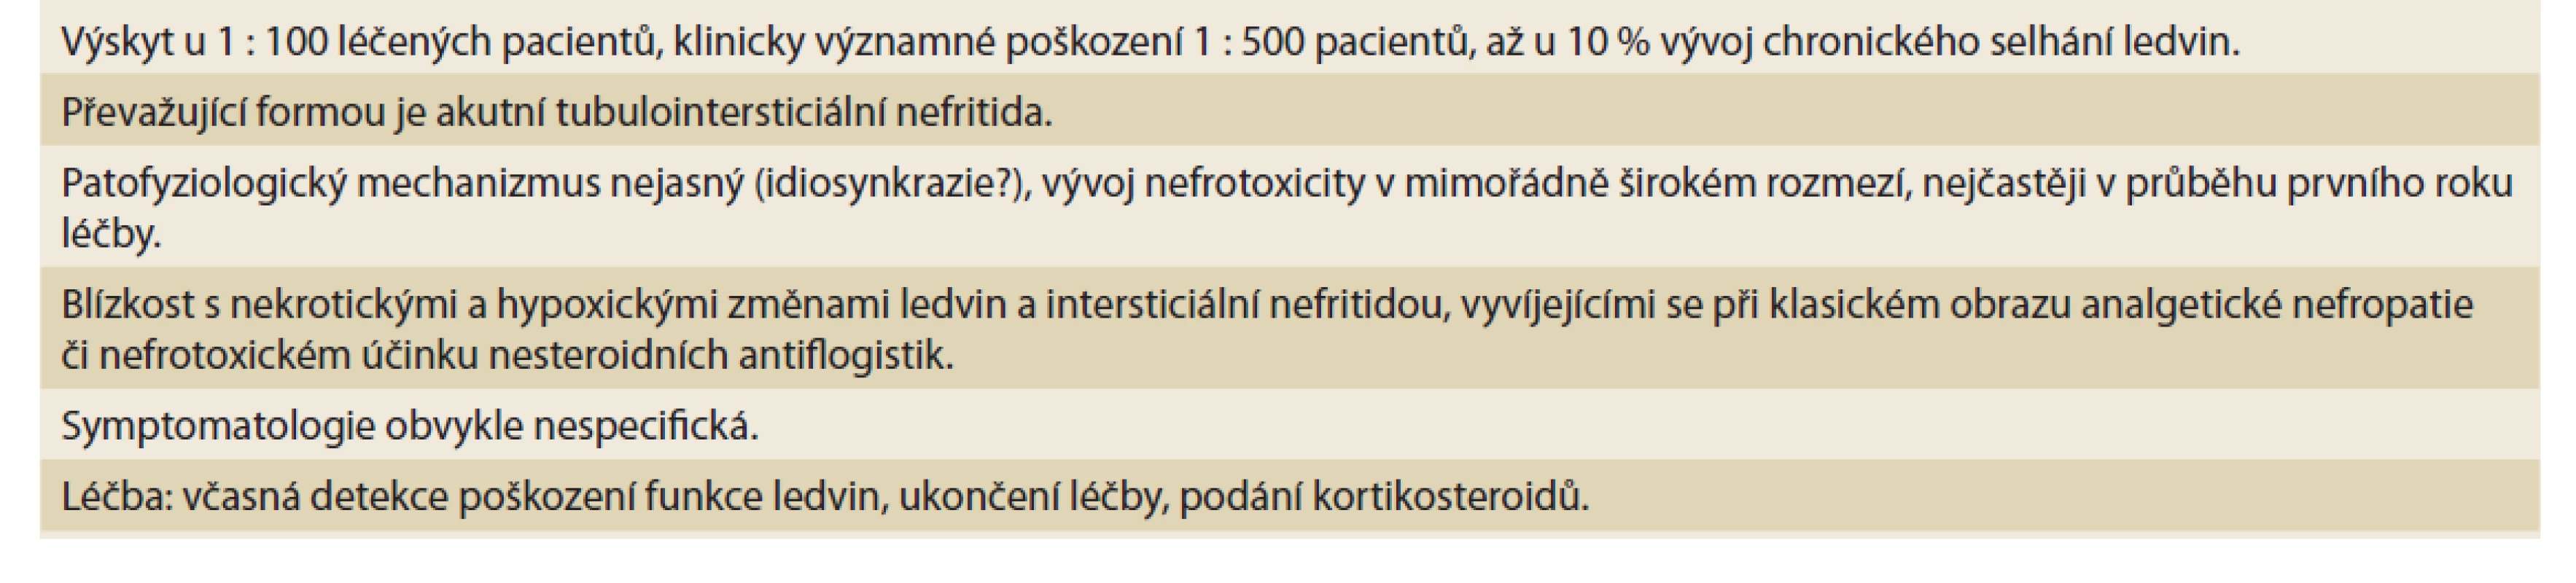 Nefrotoxicita 5-aminosalicylátů (5-ASA) v léčbě (idiopatického) zánětlivého onemocnění střeva (IBD).<br>
Tab. 2. Nephrotoxicity of 5-aminosalicylates (5-ASA) in the treatment of (idiopathic) inflammatory bowel disease (IBD).